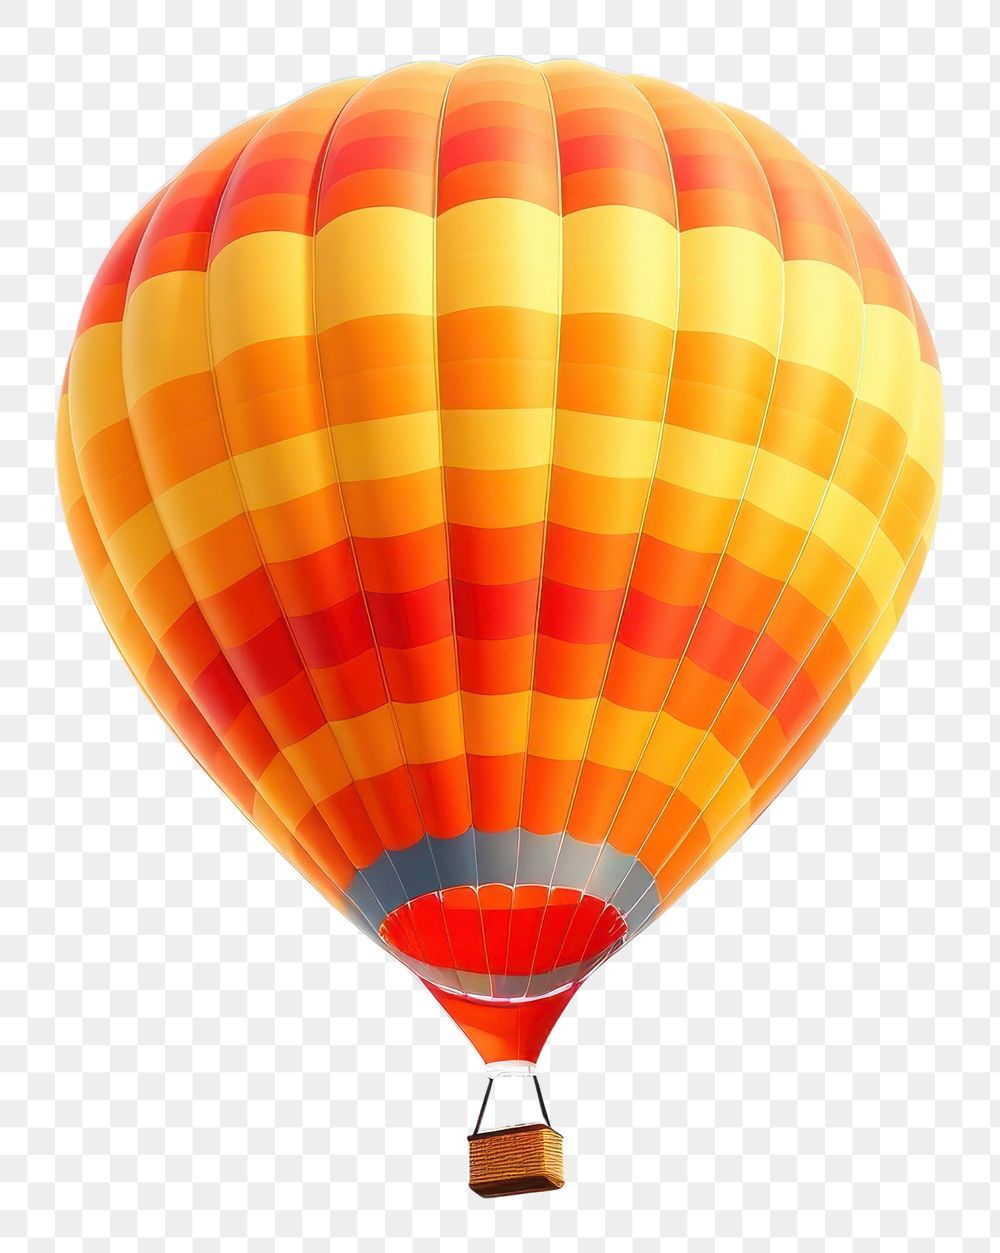 PNG Balloon aircraft vehicle hot air ballooning. AI generated Image by rawpixel.